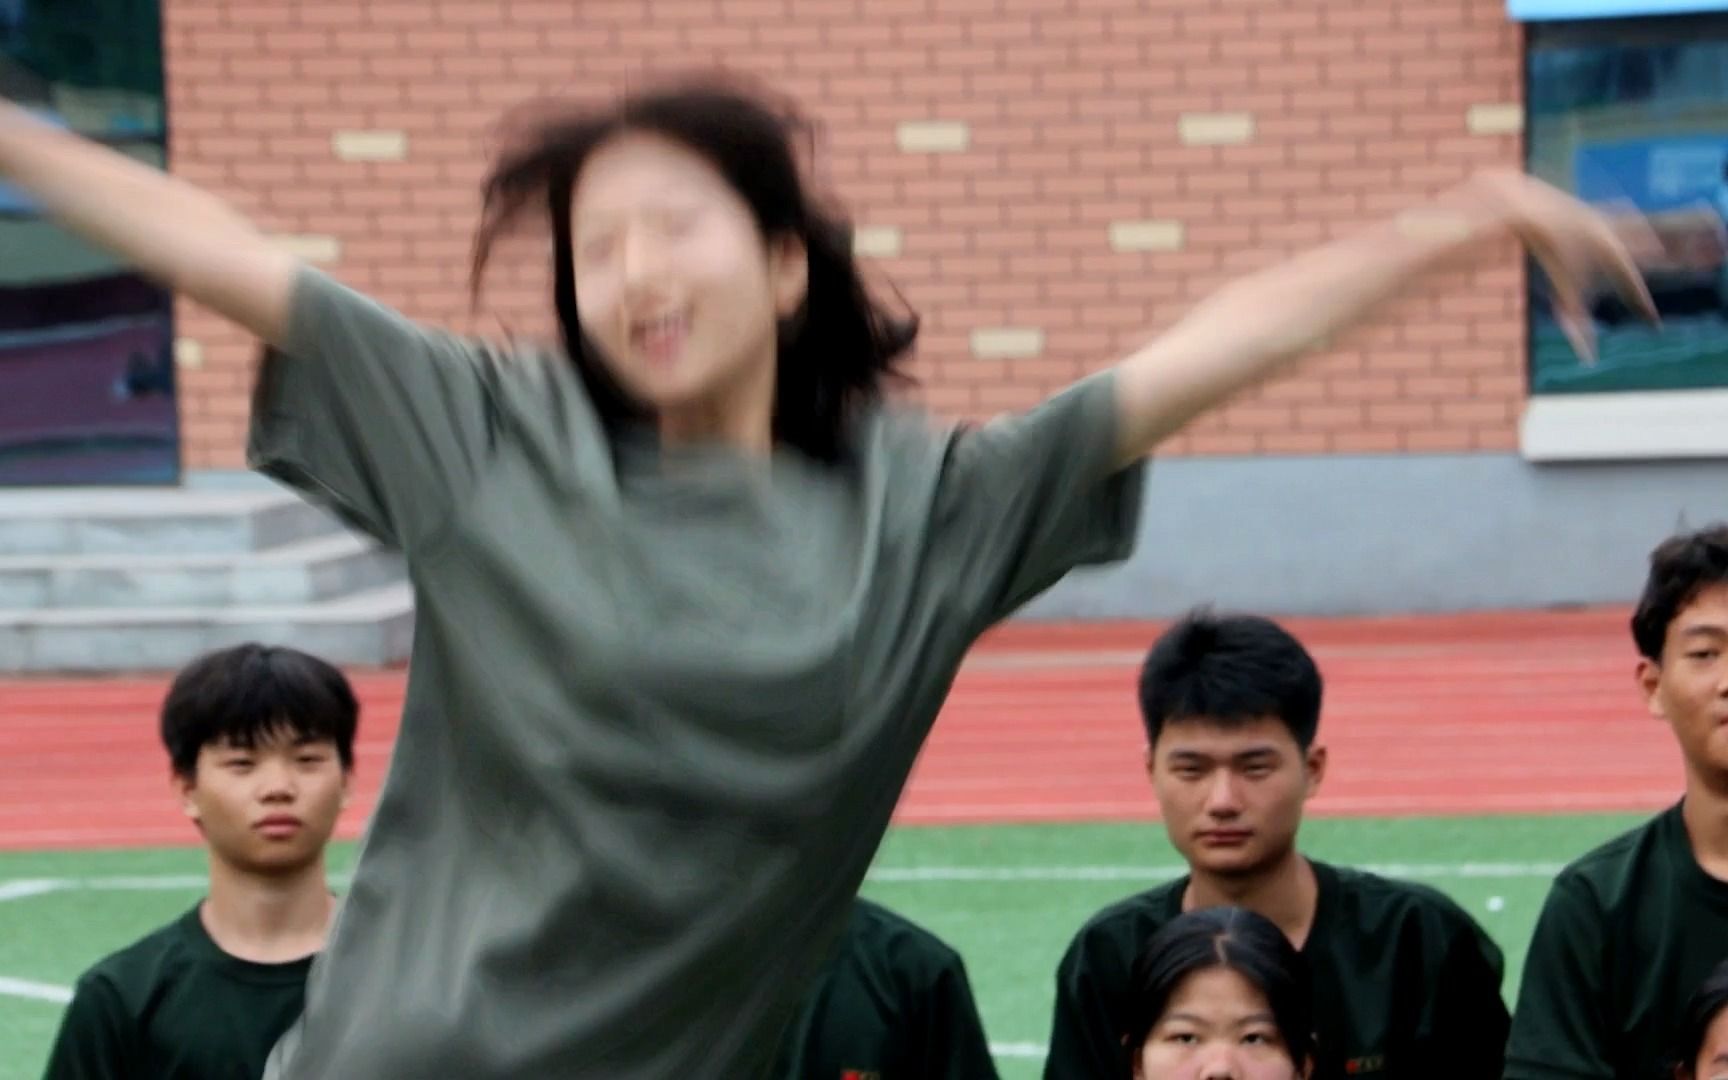 许昌市第三高级中学高一国防教育 舞蹈助力 拥抱青春 绽放活力